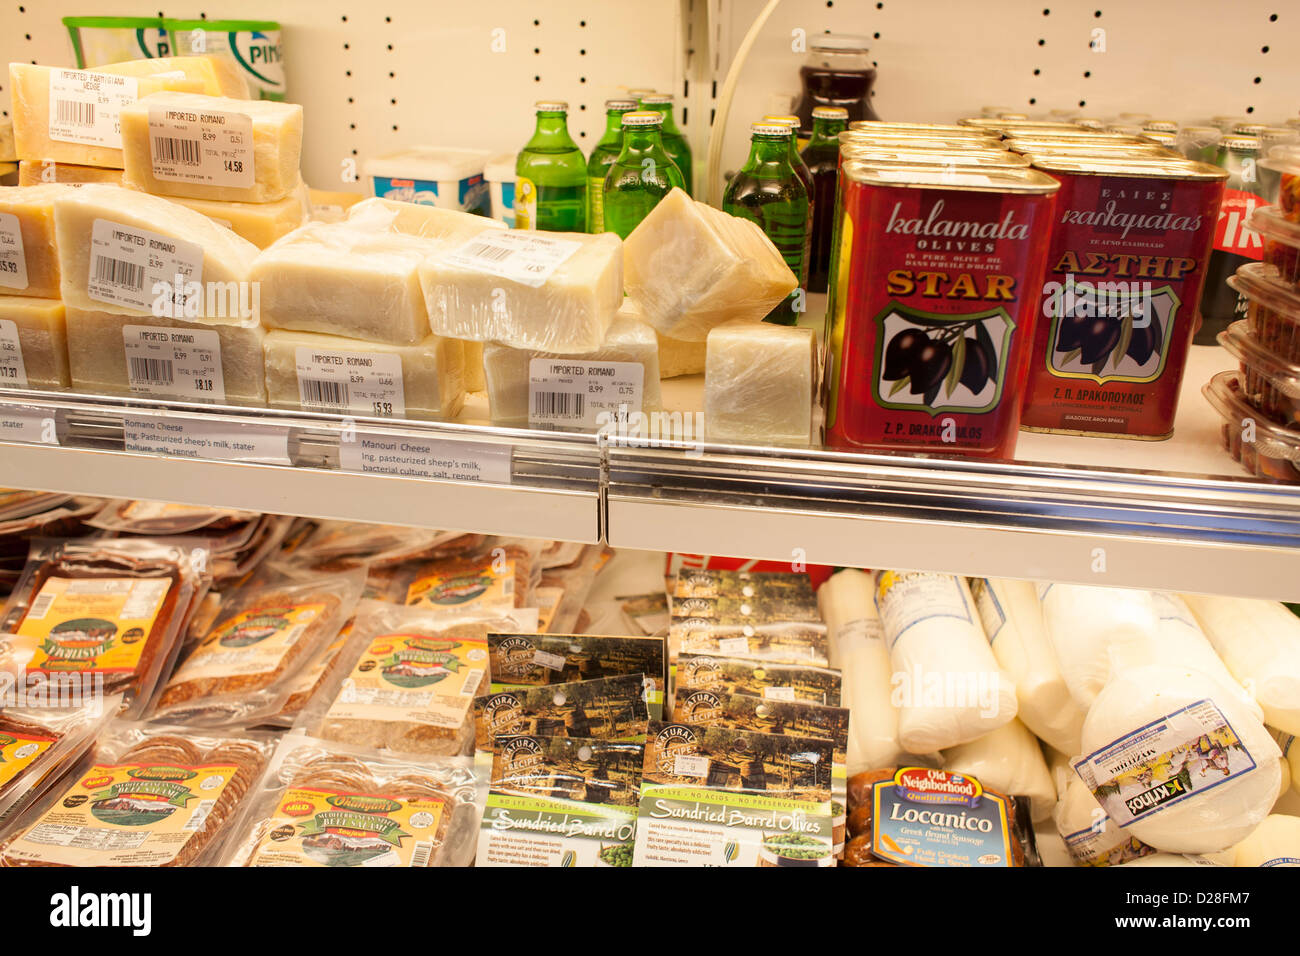 Le cas réfrigérés dans un deli du Moyen-Orient à Watertown, Massachusetts a une grande variété de produits. Banque D'Images